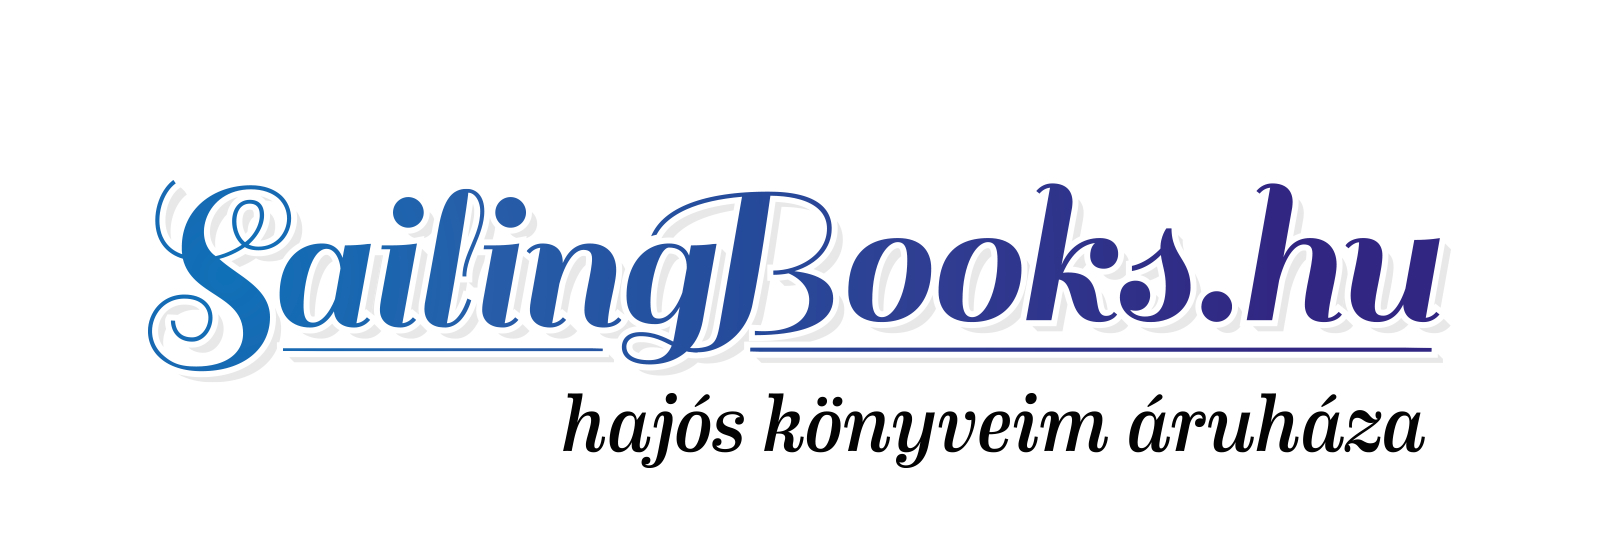 sailing-books-logo.jpg